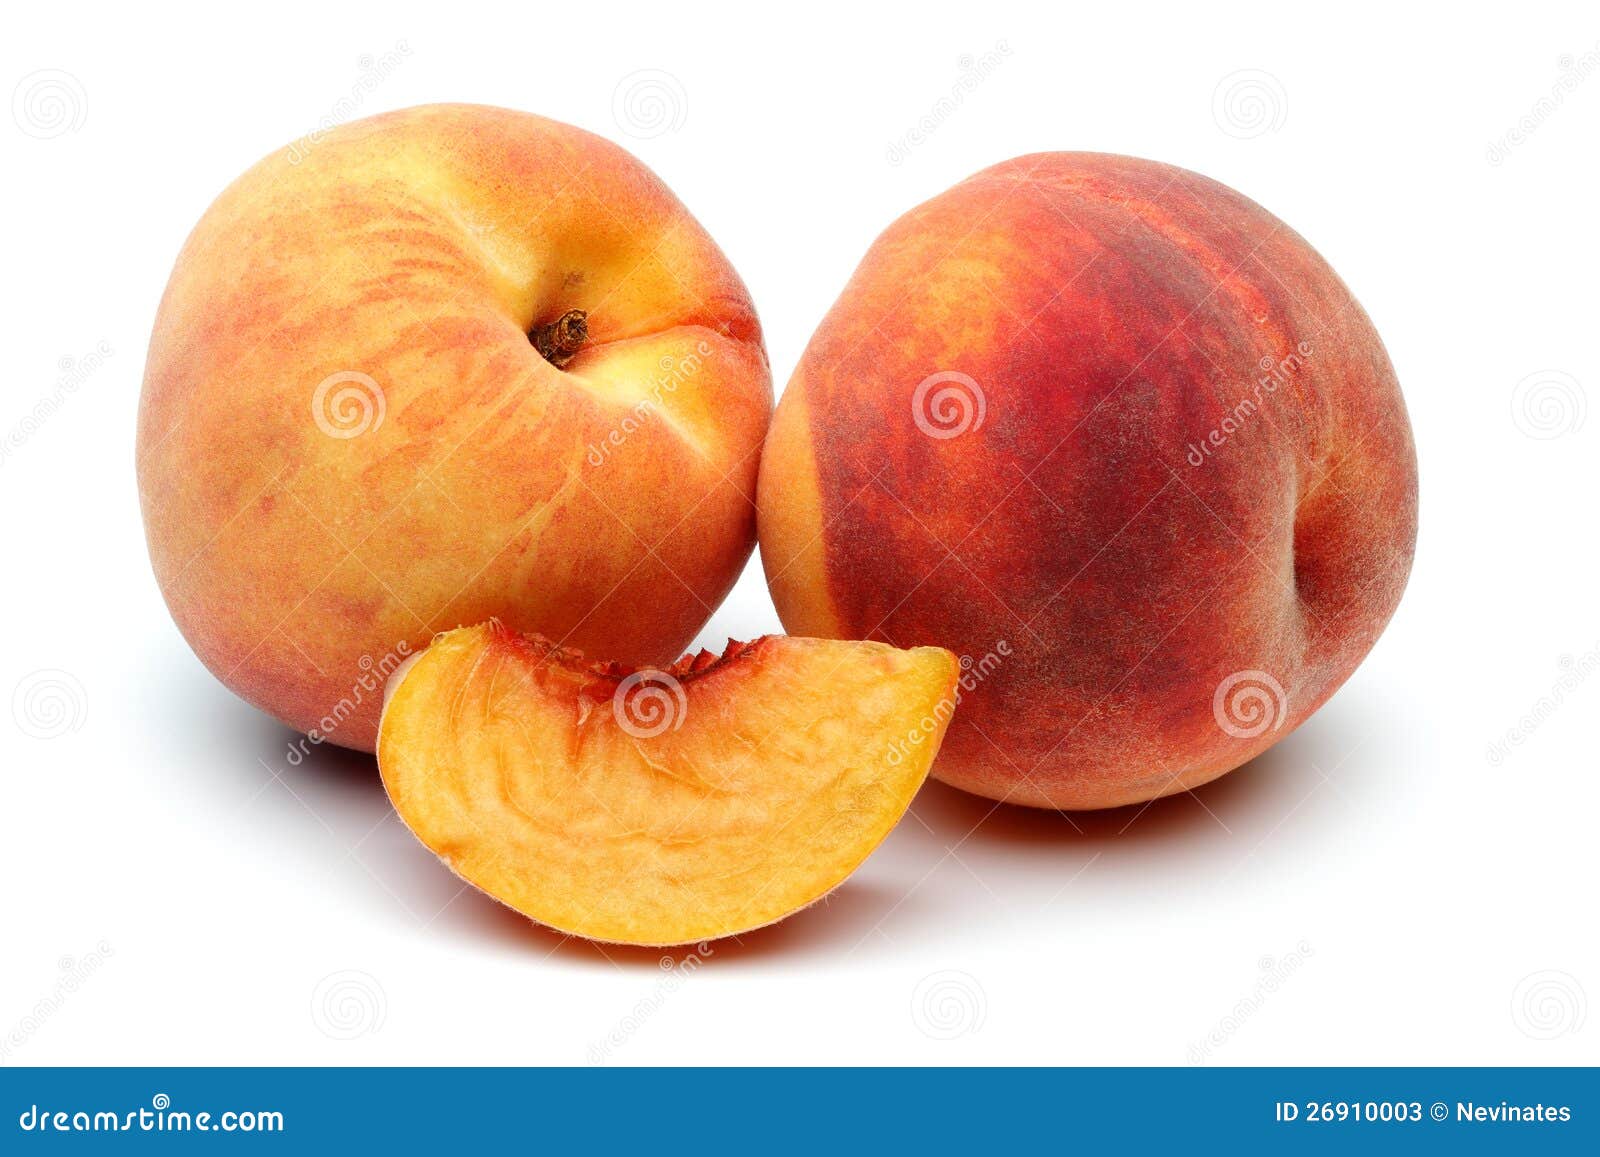 two peach and sliced peach